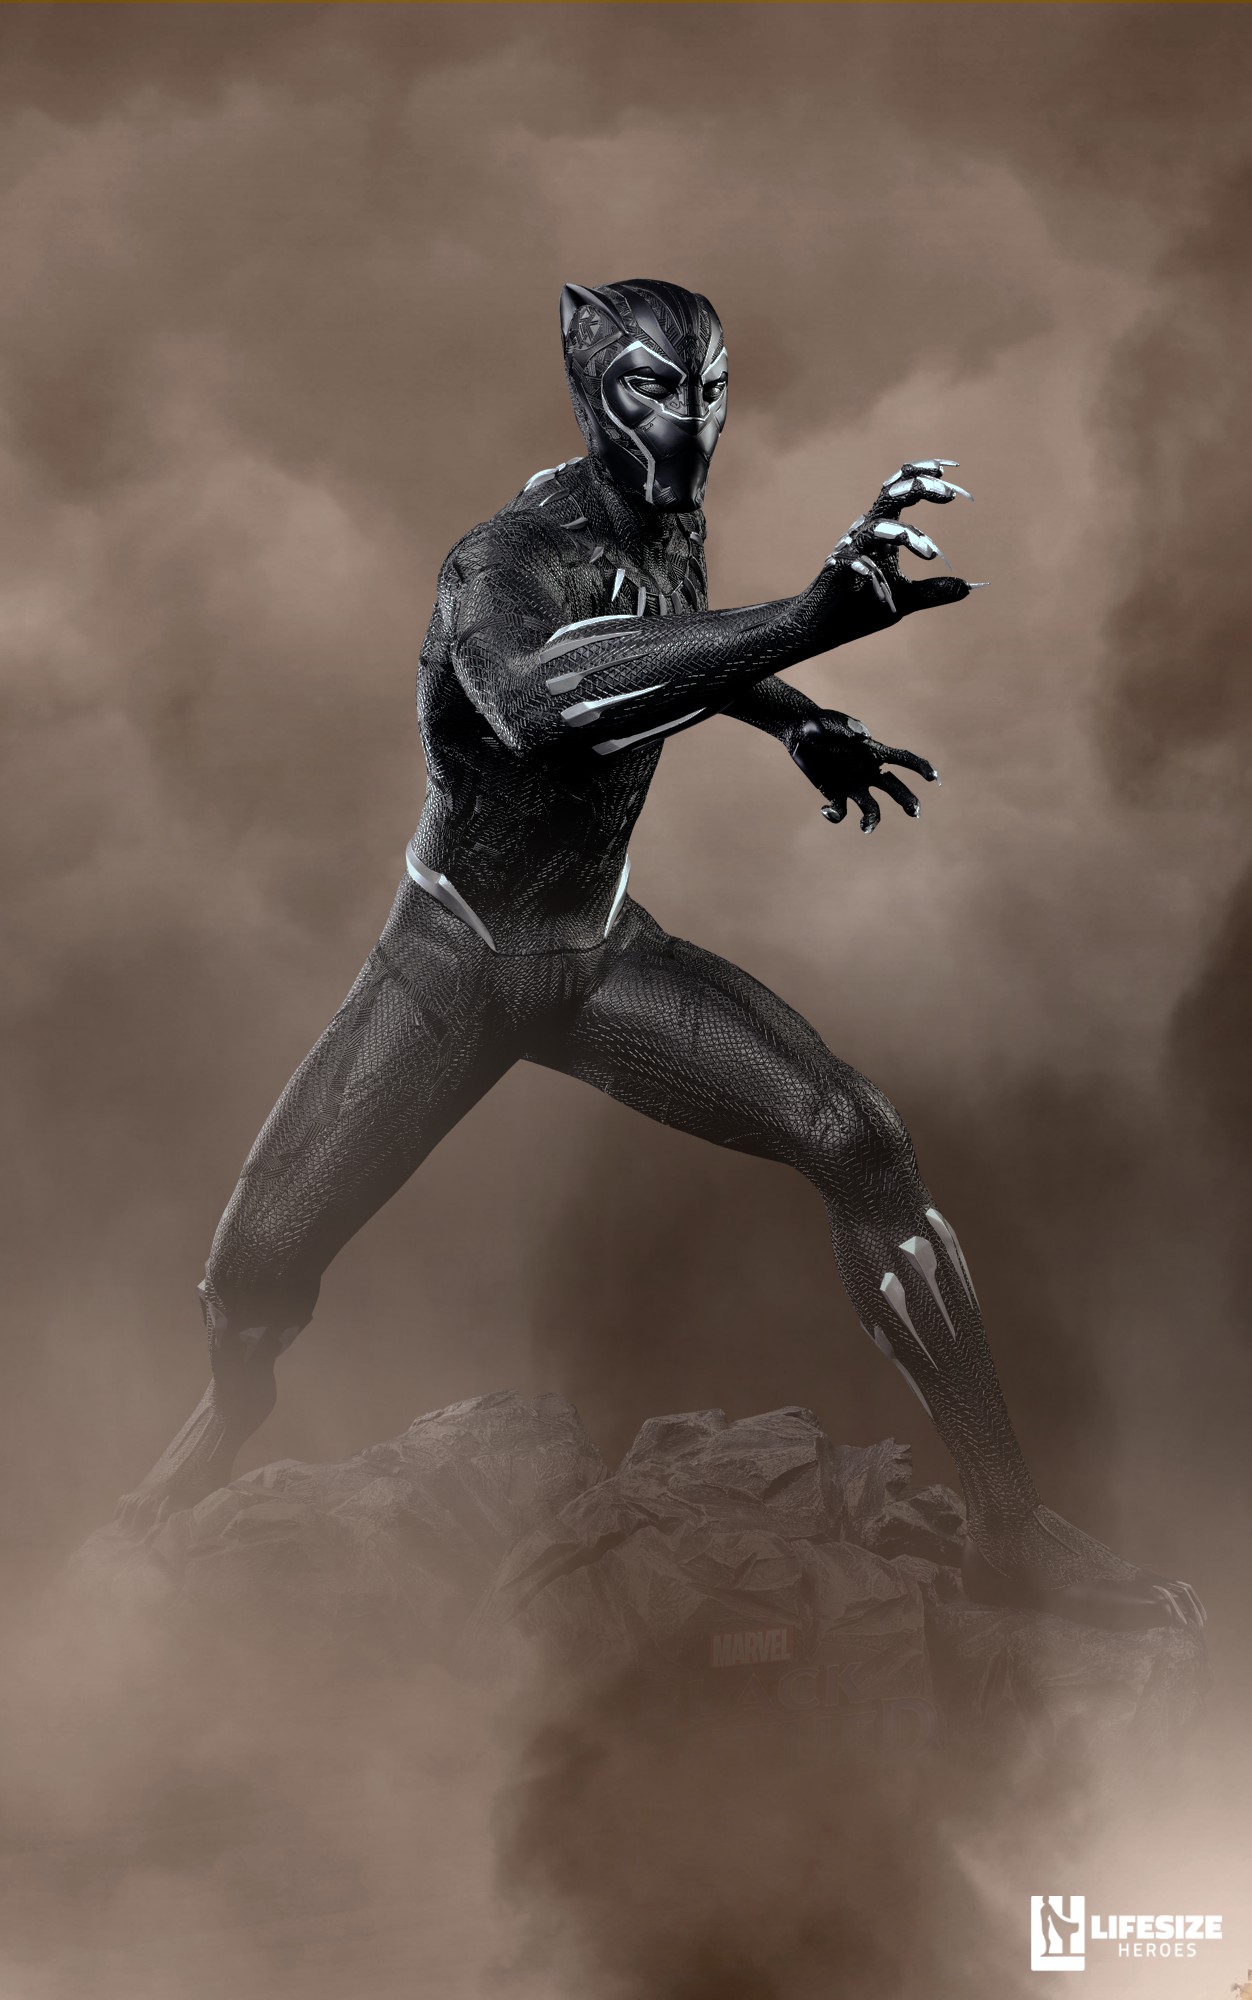 Black Panther